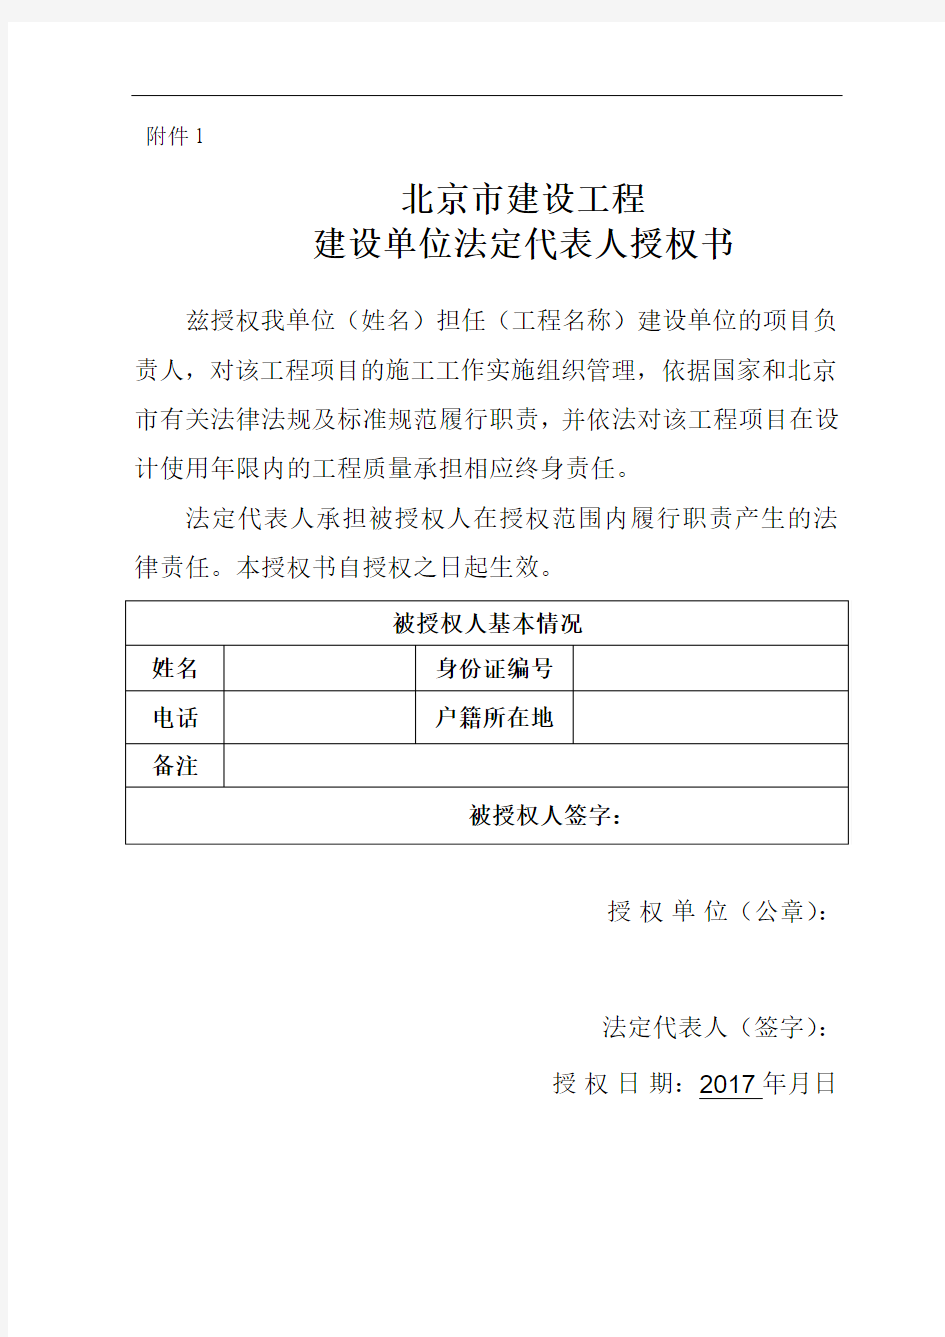 北京市建设工程建设单位法定代表人授权书